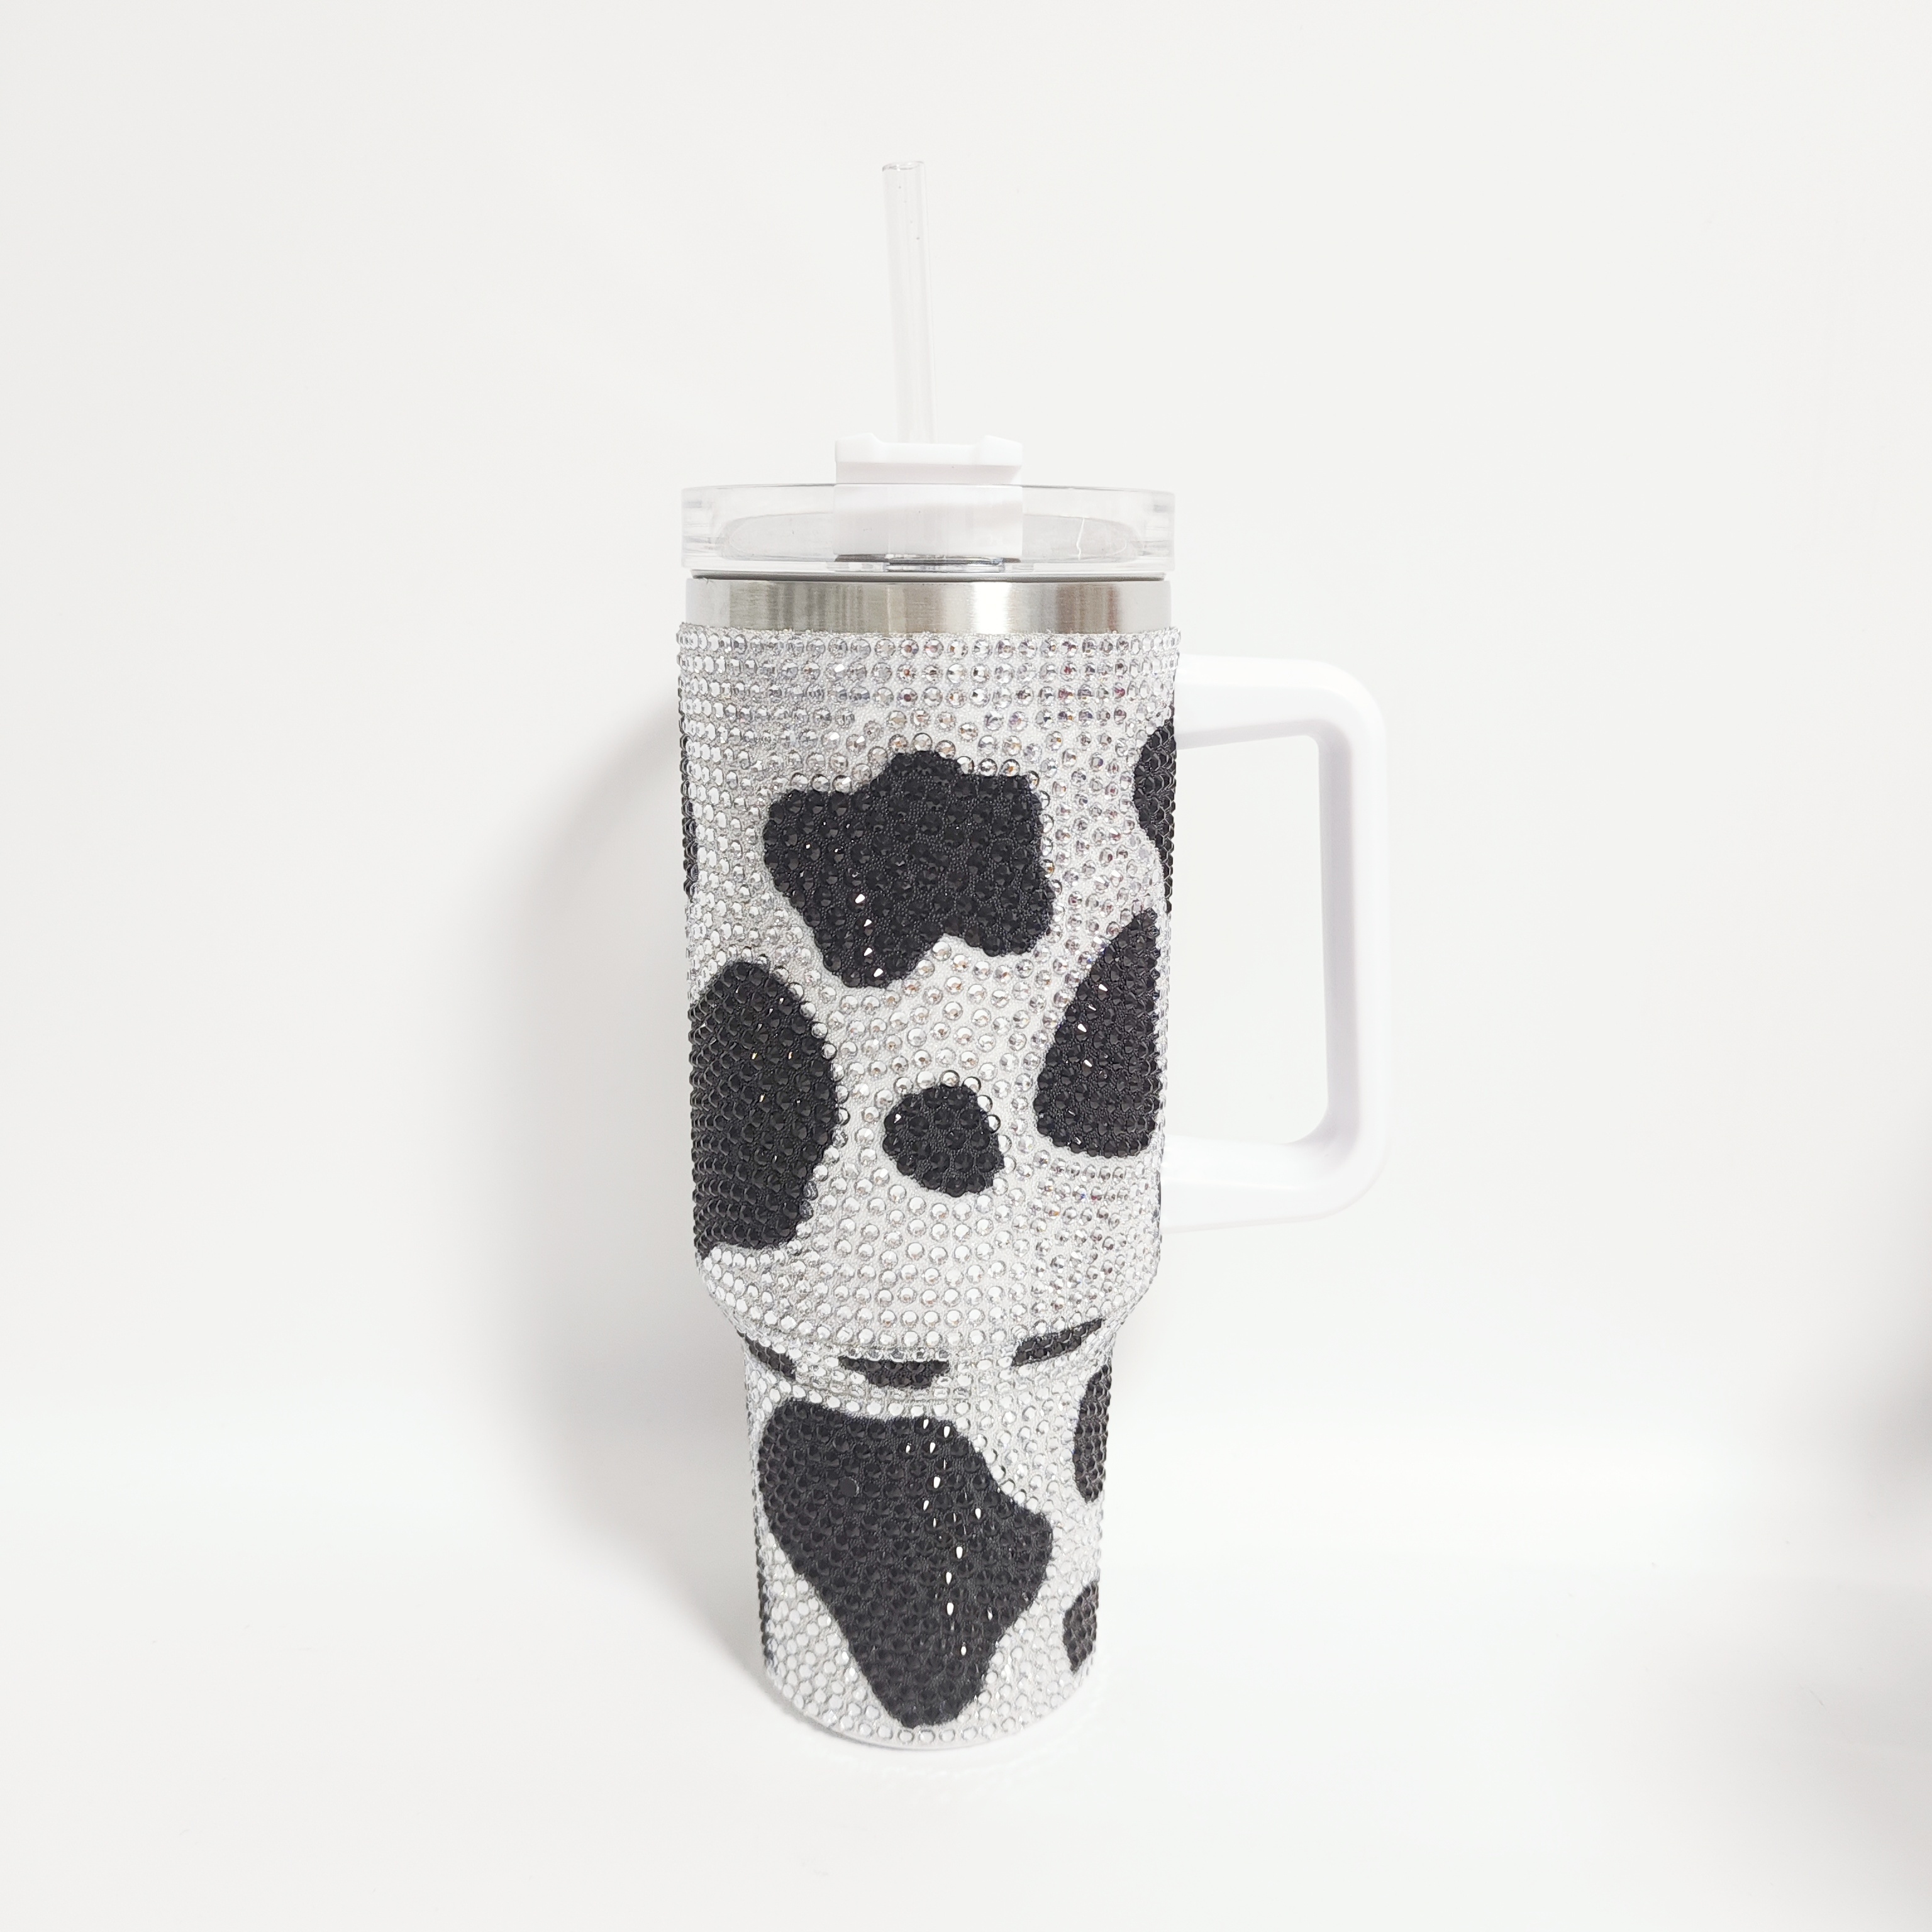 Katydid 40 oz Cow Print Tumbler - Black/White - One Size